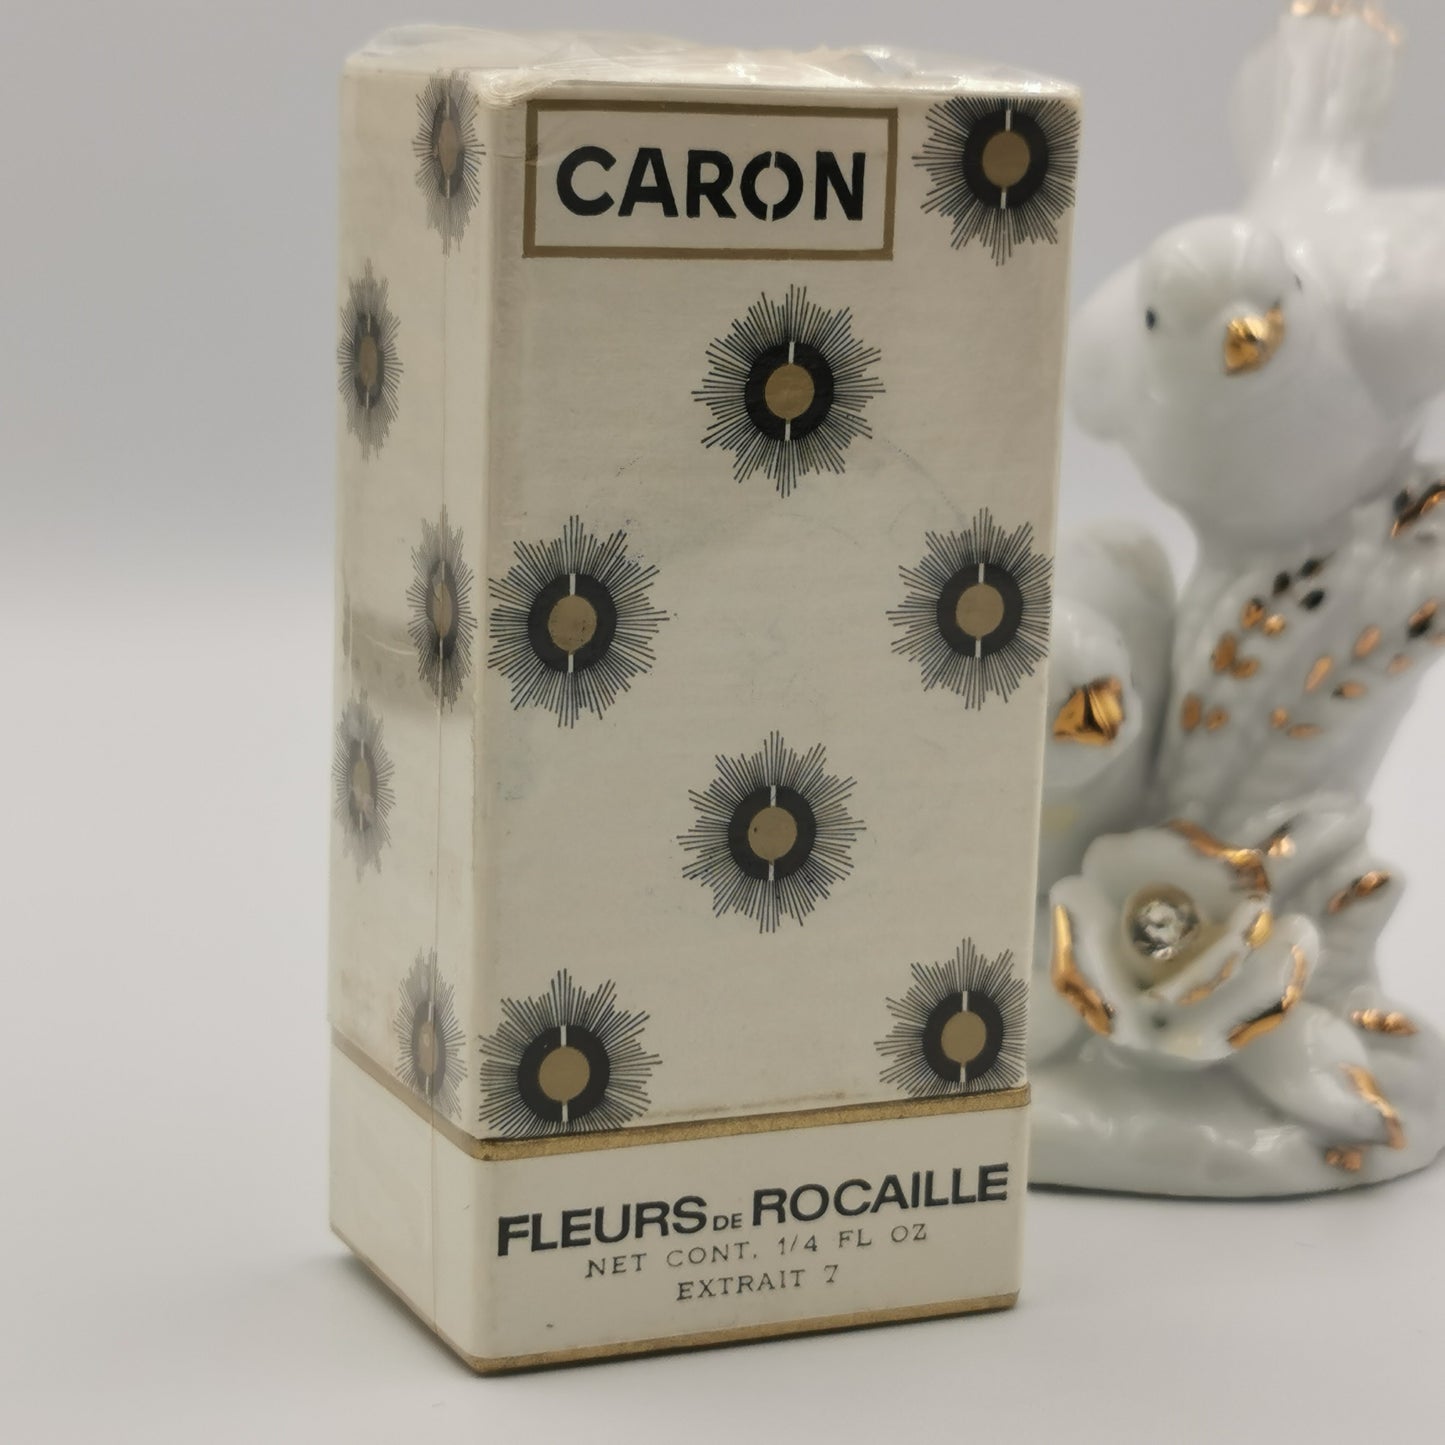 Fleurs de Rocaille by Caron 7ml PARFUM Splash VINTAGE SEALED